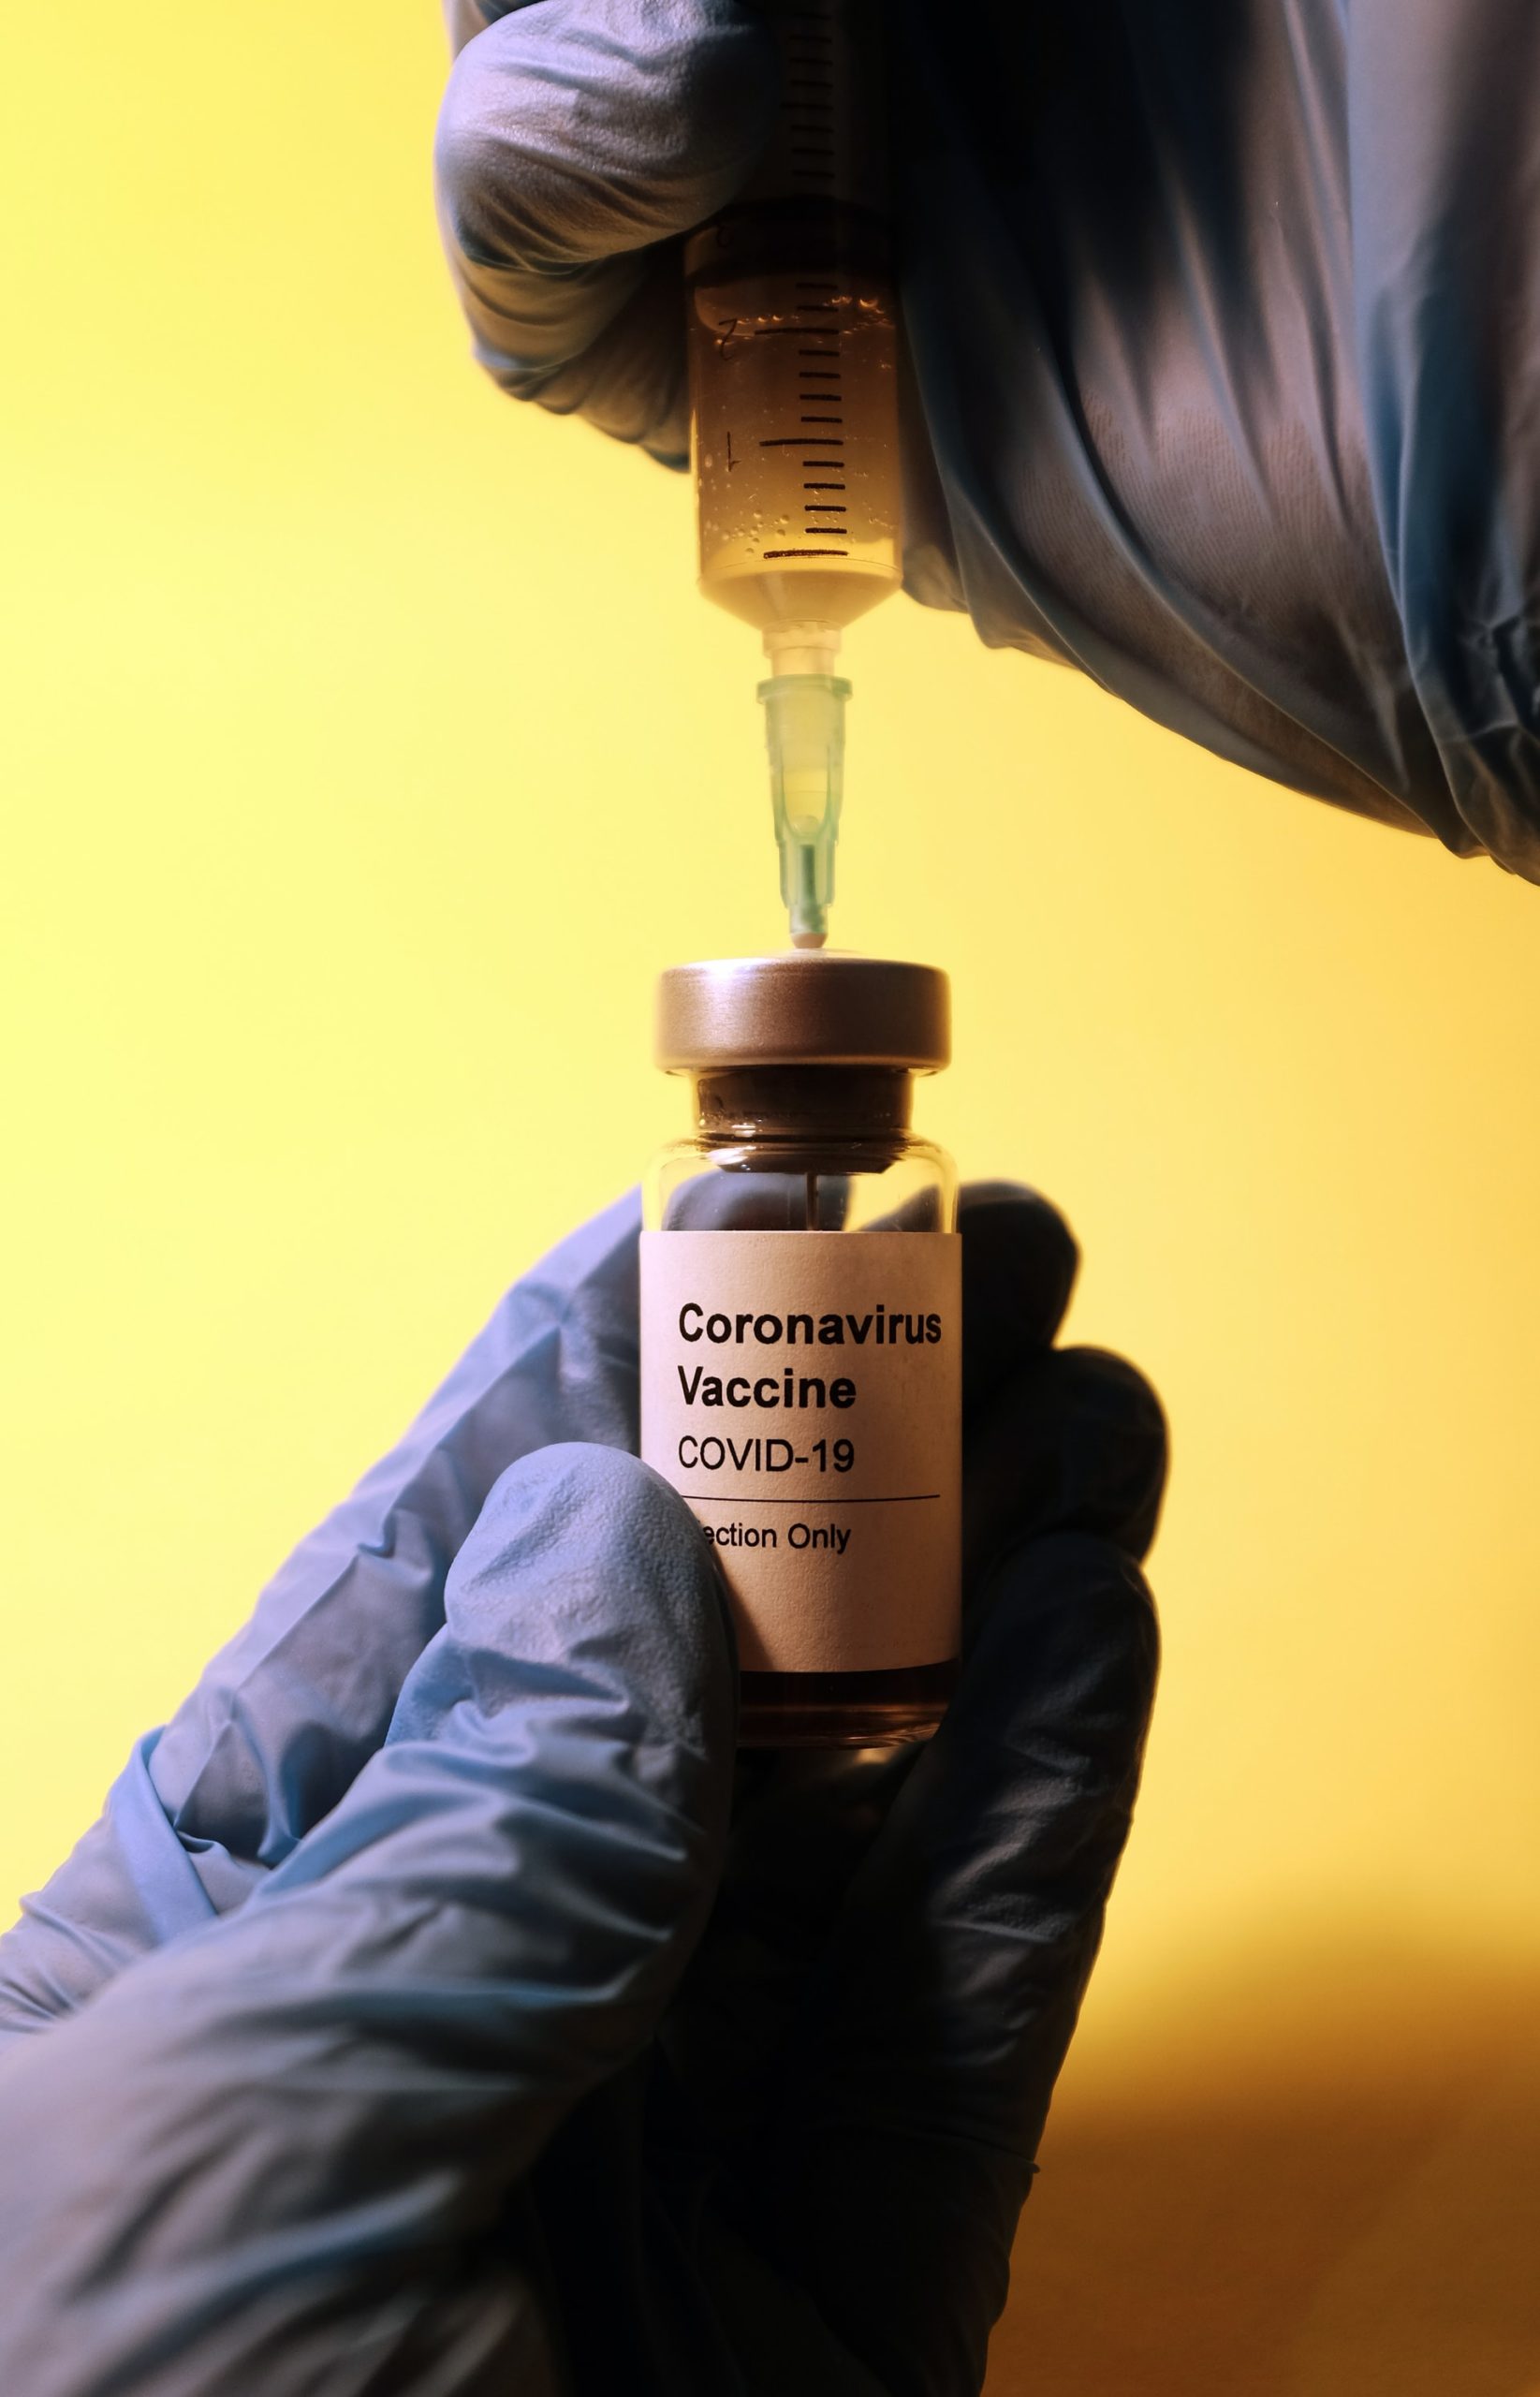 Le vaccin: marchandise versus bien commun?